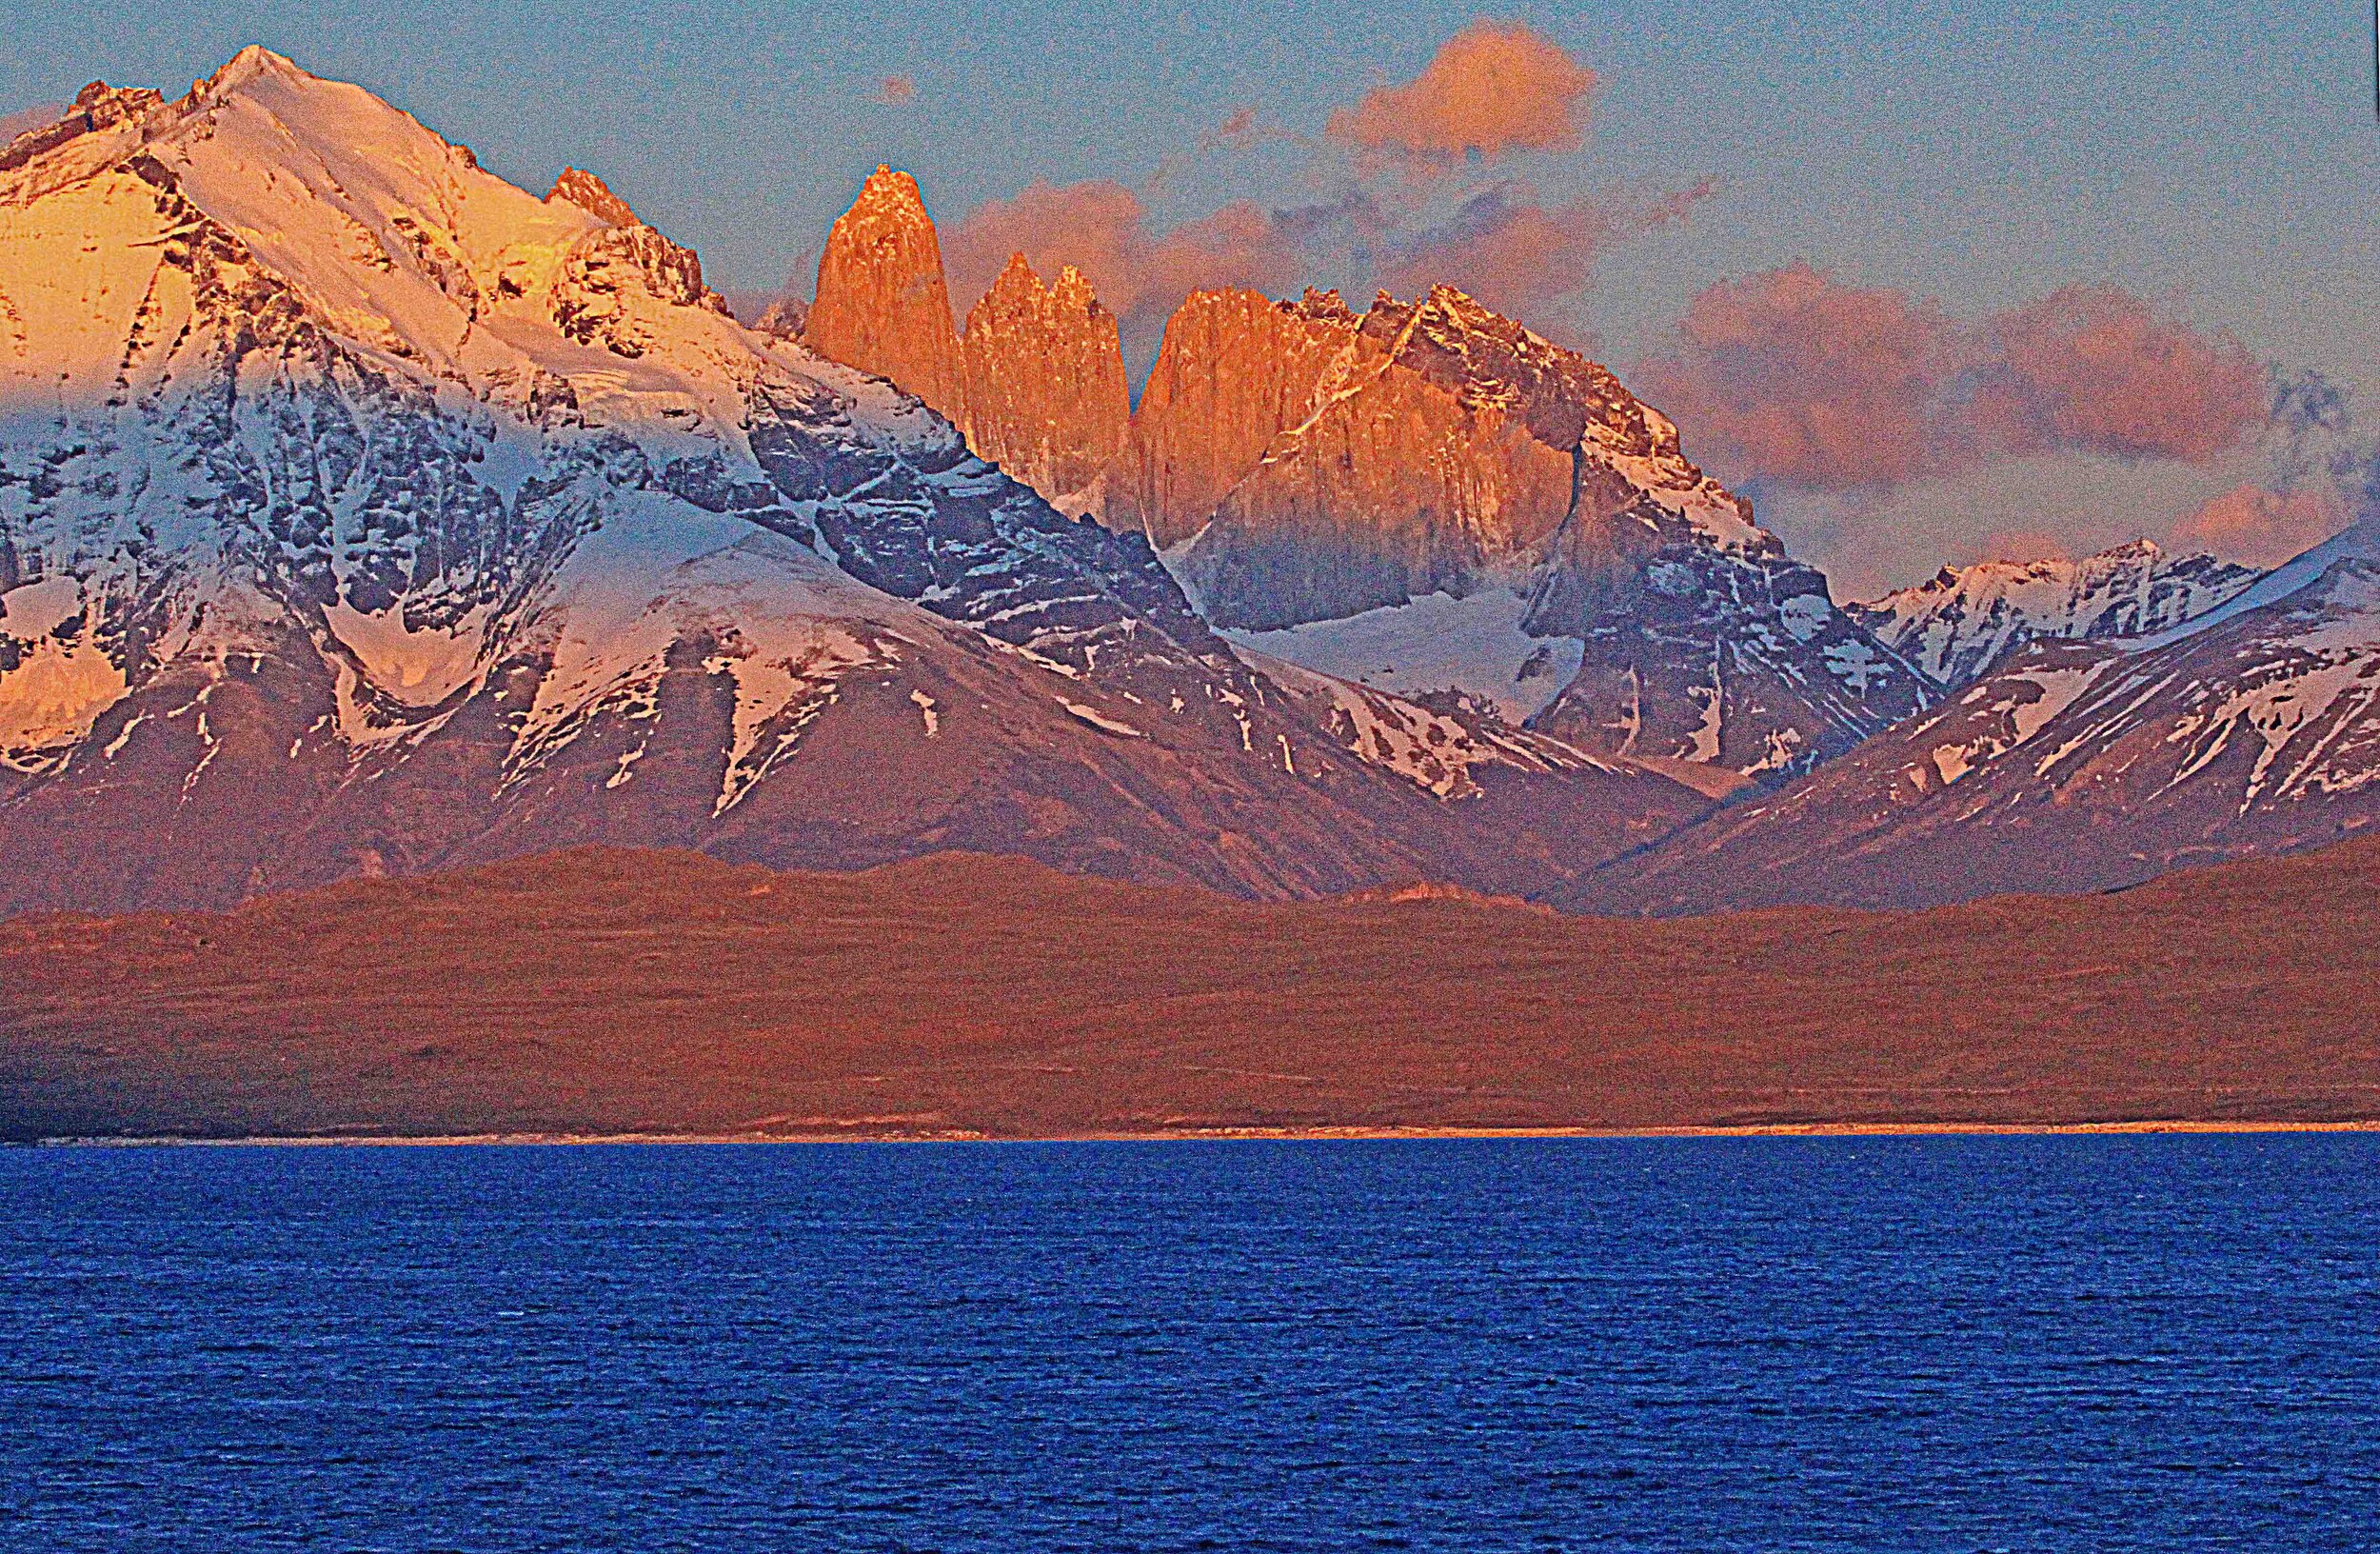  Torres Del Paine, Patagonia, Argentina         